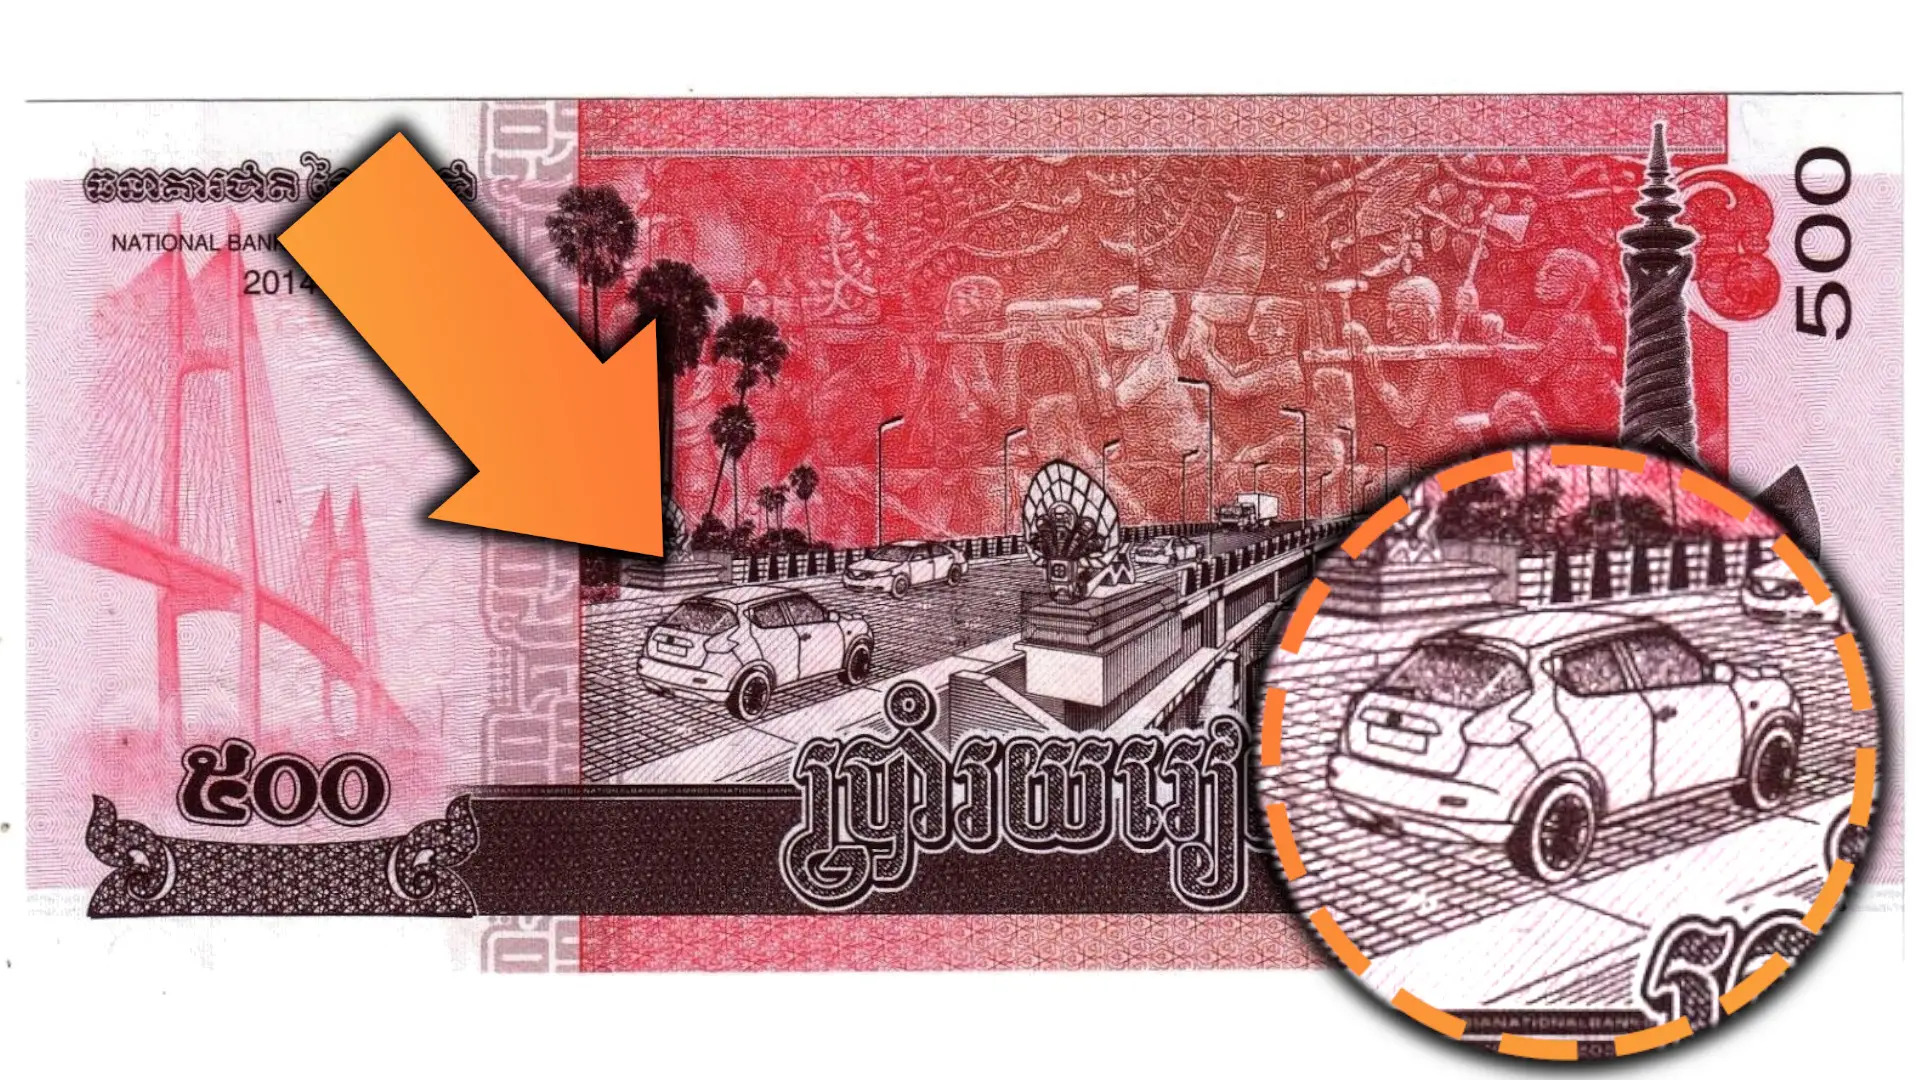 Sự độc đáo của tiền Campuchia sẽ khiến bạn bị cuốn hút ngay từ cái nhìn đầu tiên. Hãy cùng xem những hình ảnh đẹp và thú vị này.